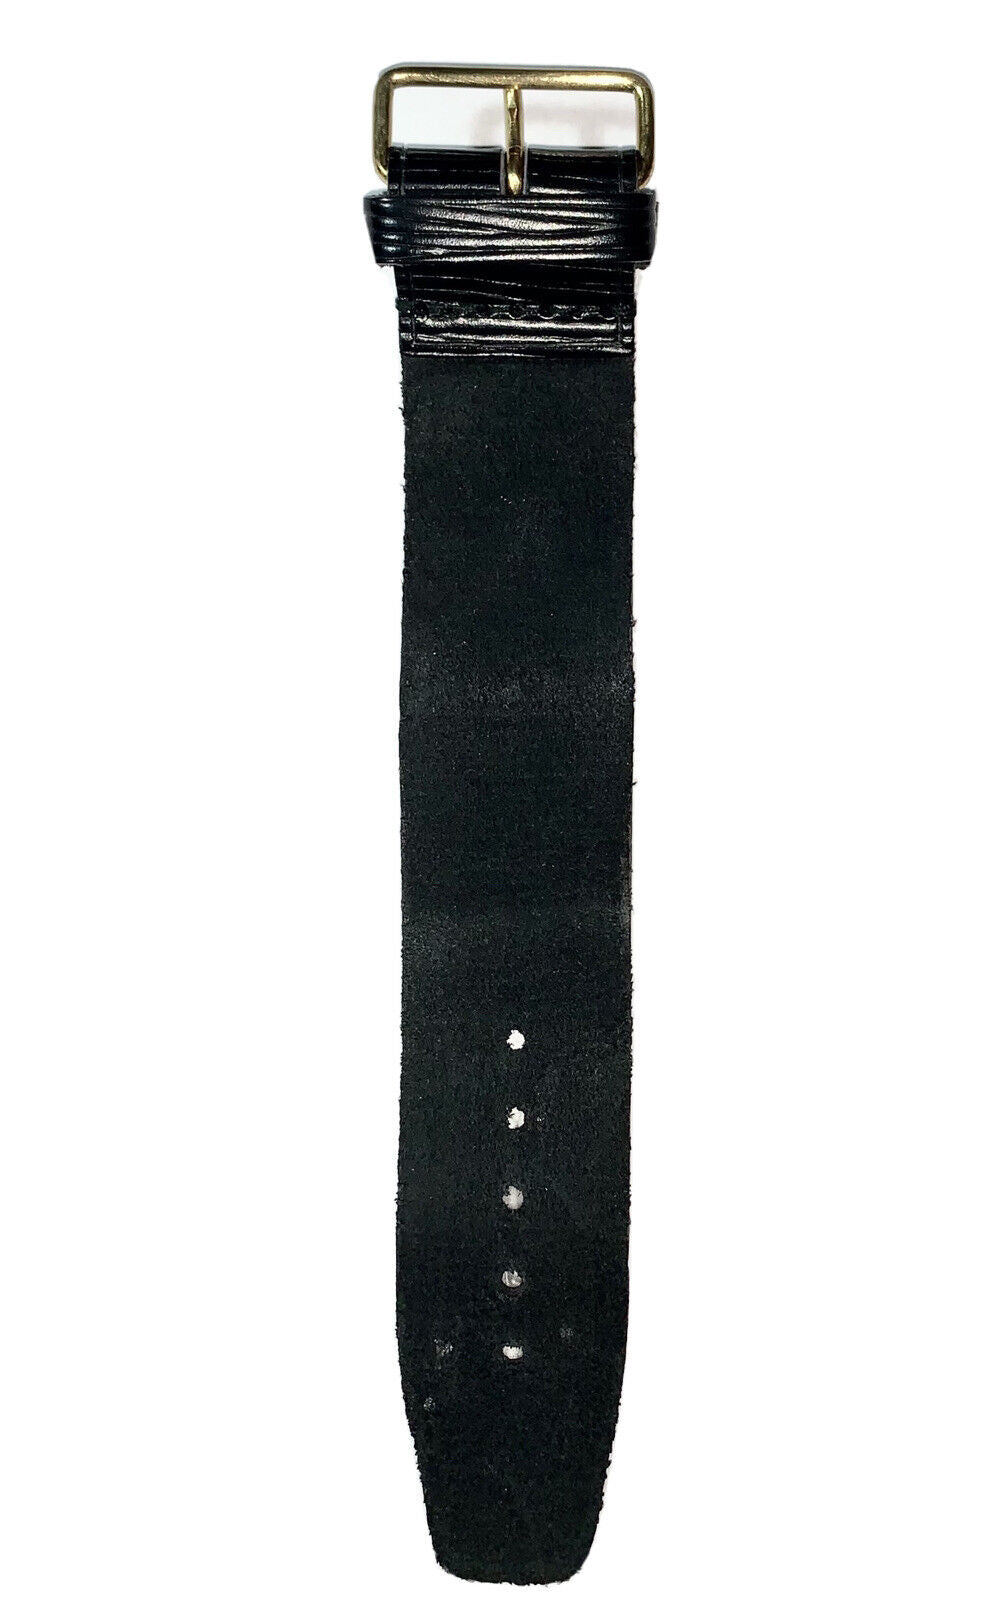 Authentic Louis Vuitton Black Epi Leather Strap Poignet - France - 1Pc